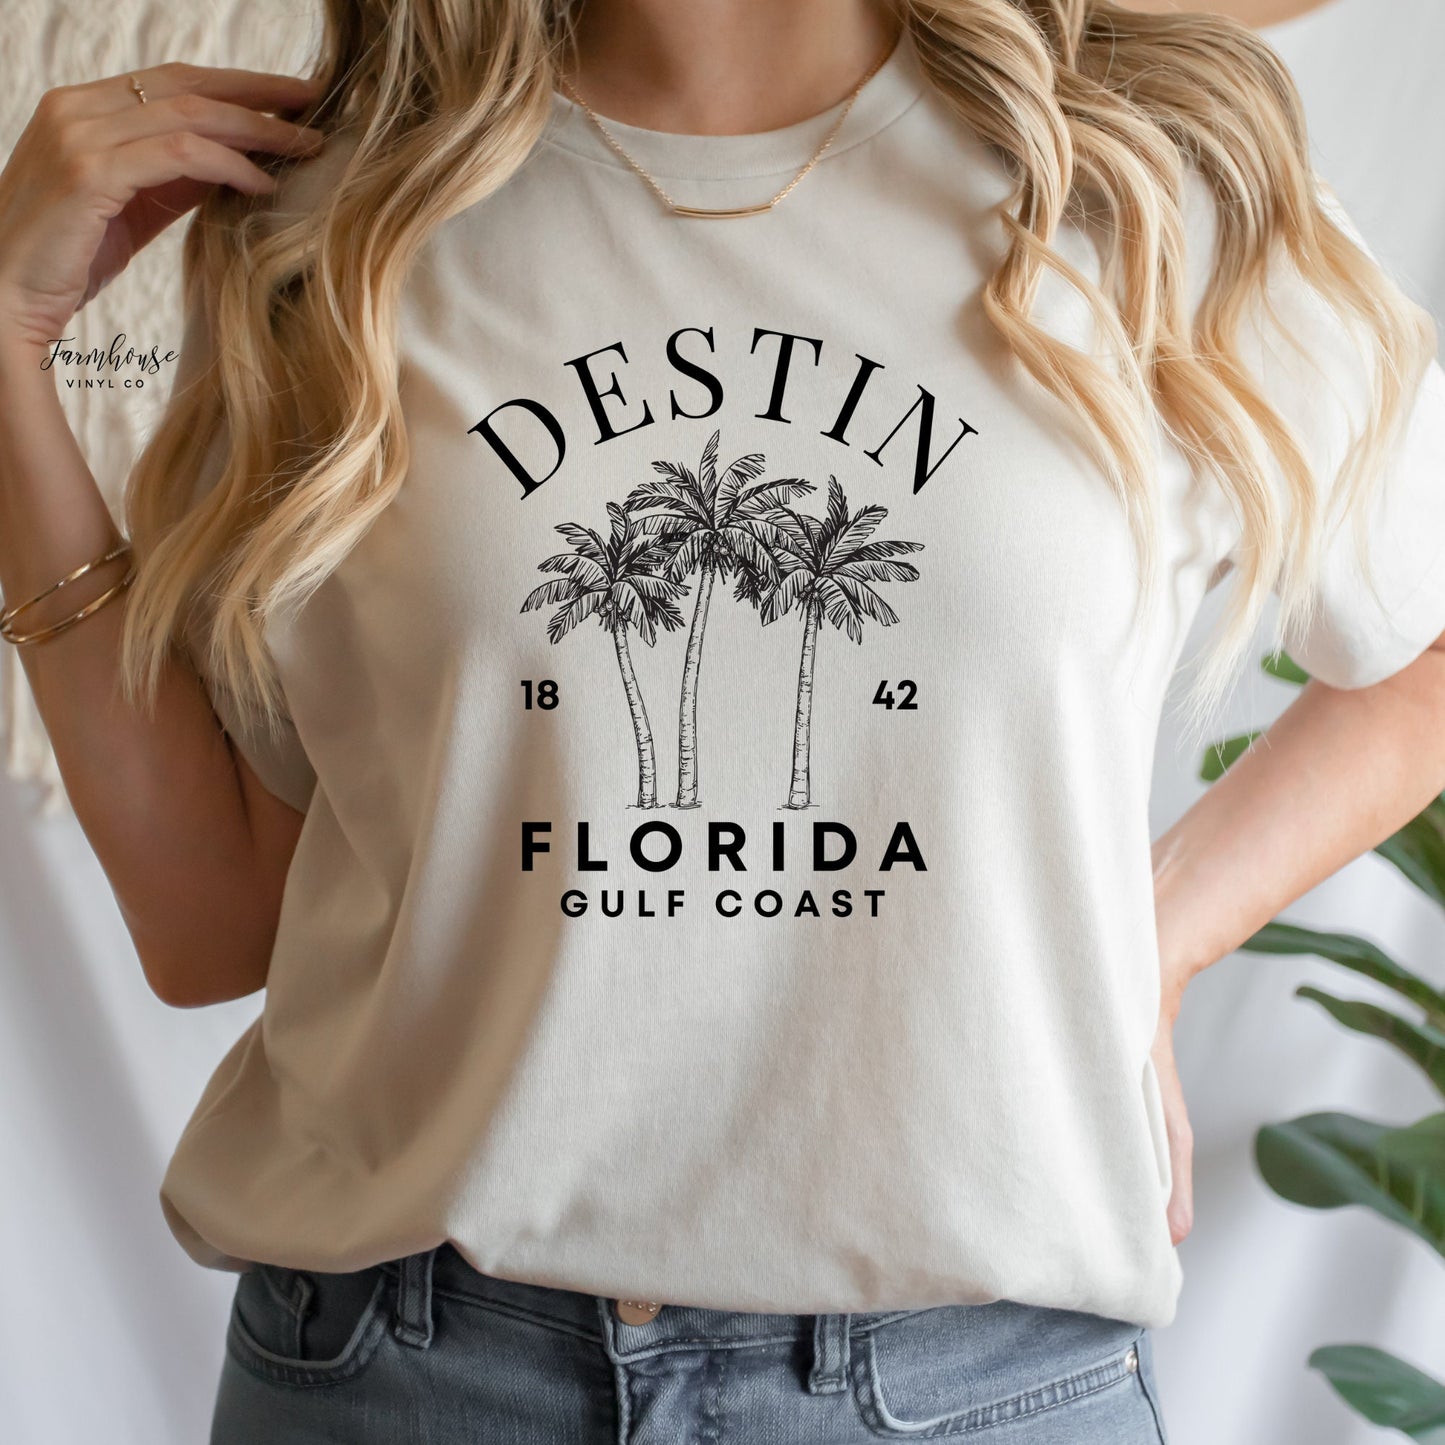 Destin Florida Shirt - Farmhouse Vinyl Co